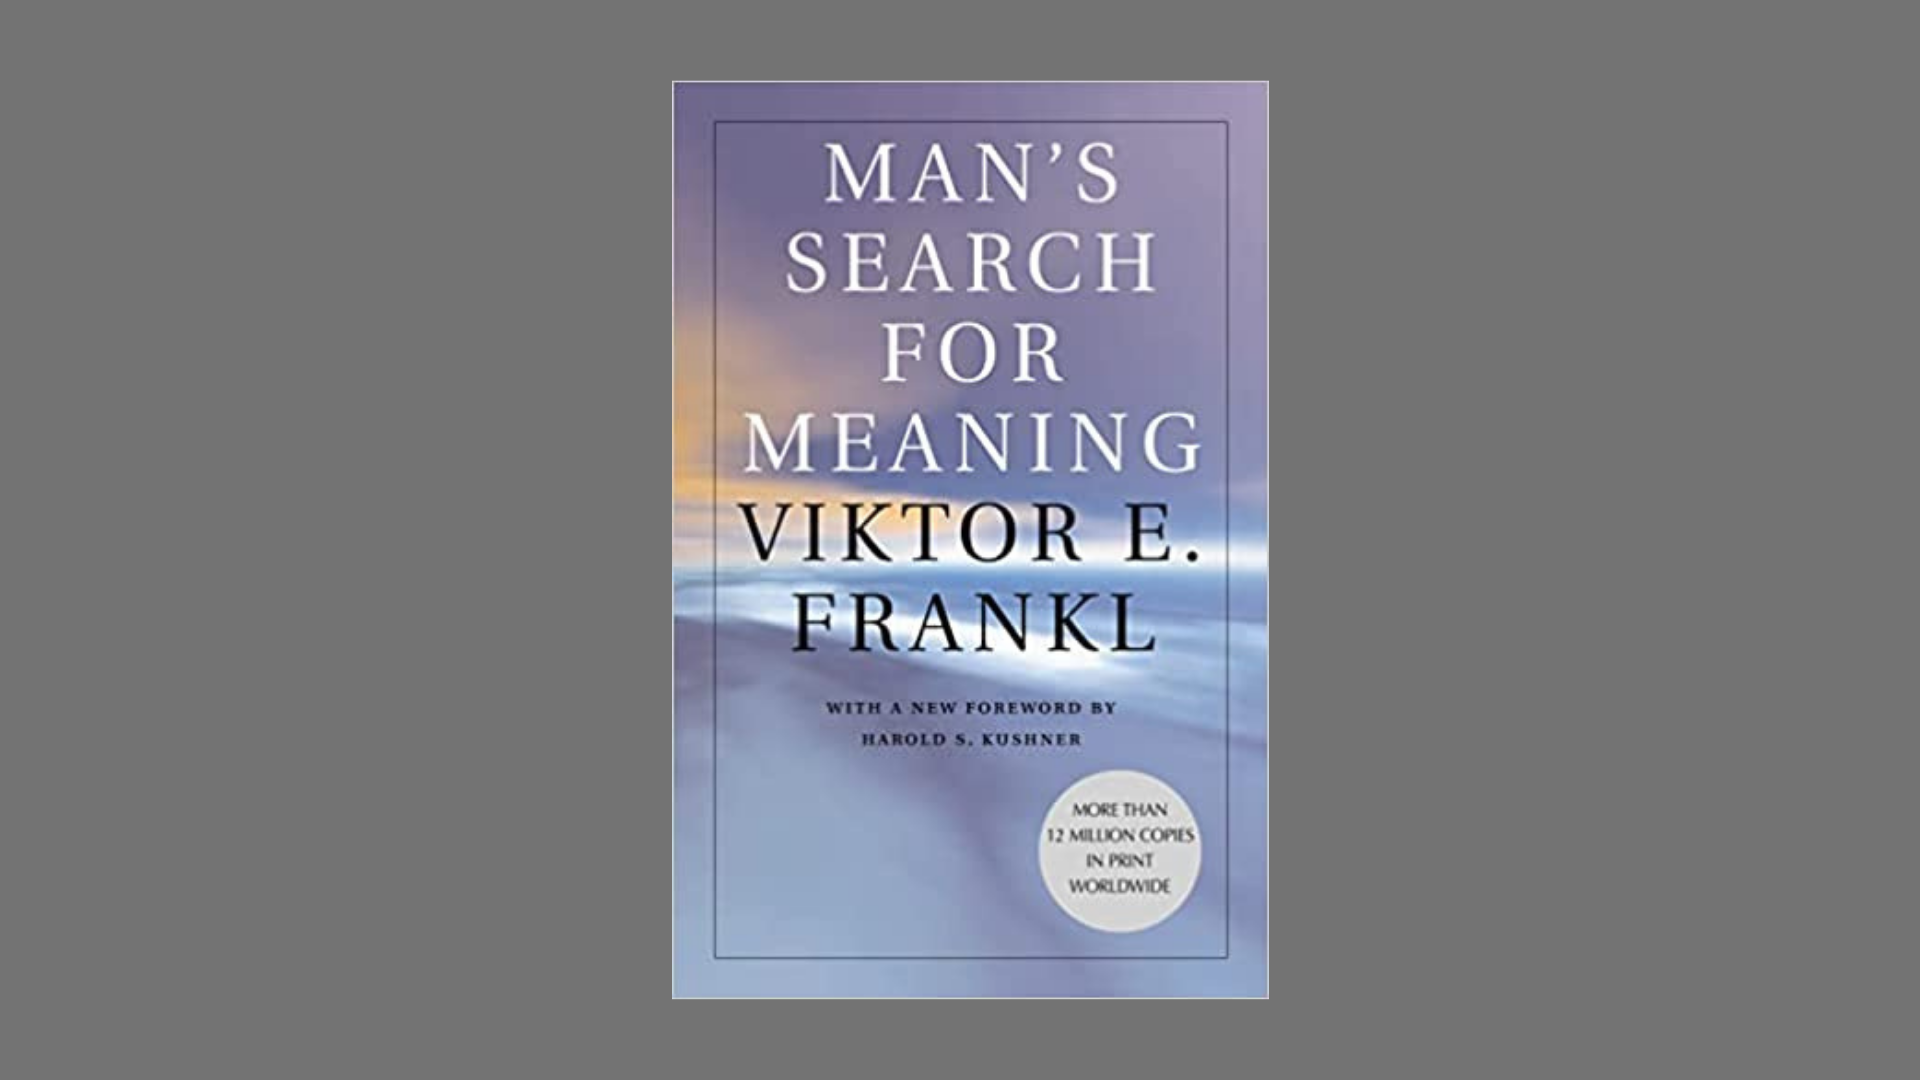 The Story of Viktor Frankl, by Maria Popova